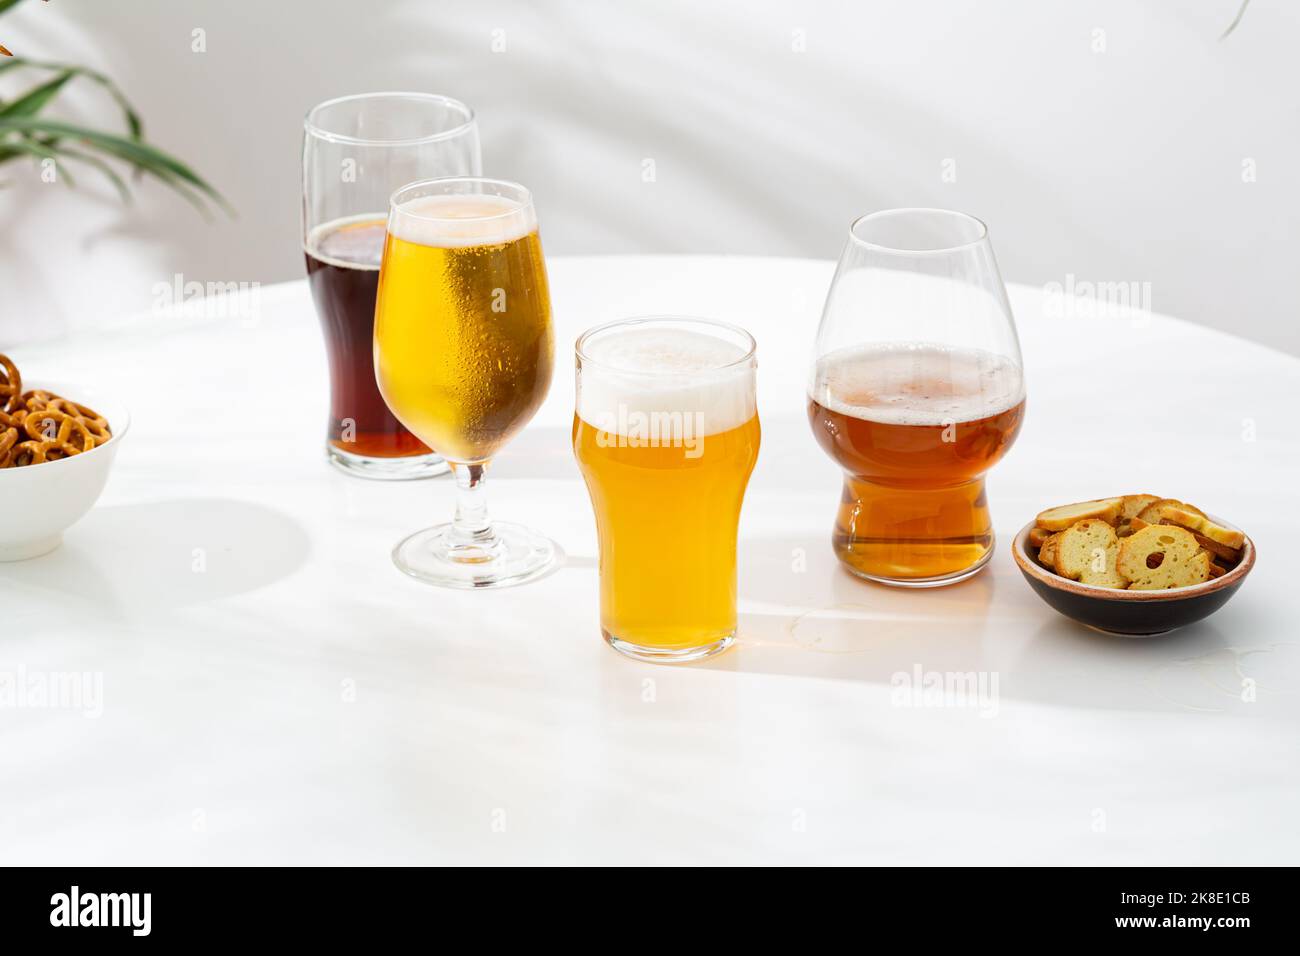 Diversi bicchieri di birra chiara scuro artigianale su superficie chiara copia spazio Foto Stock